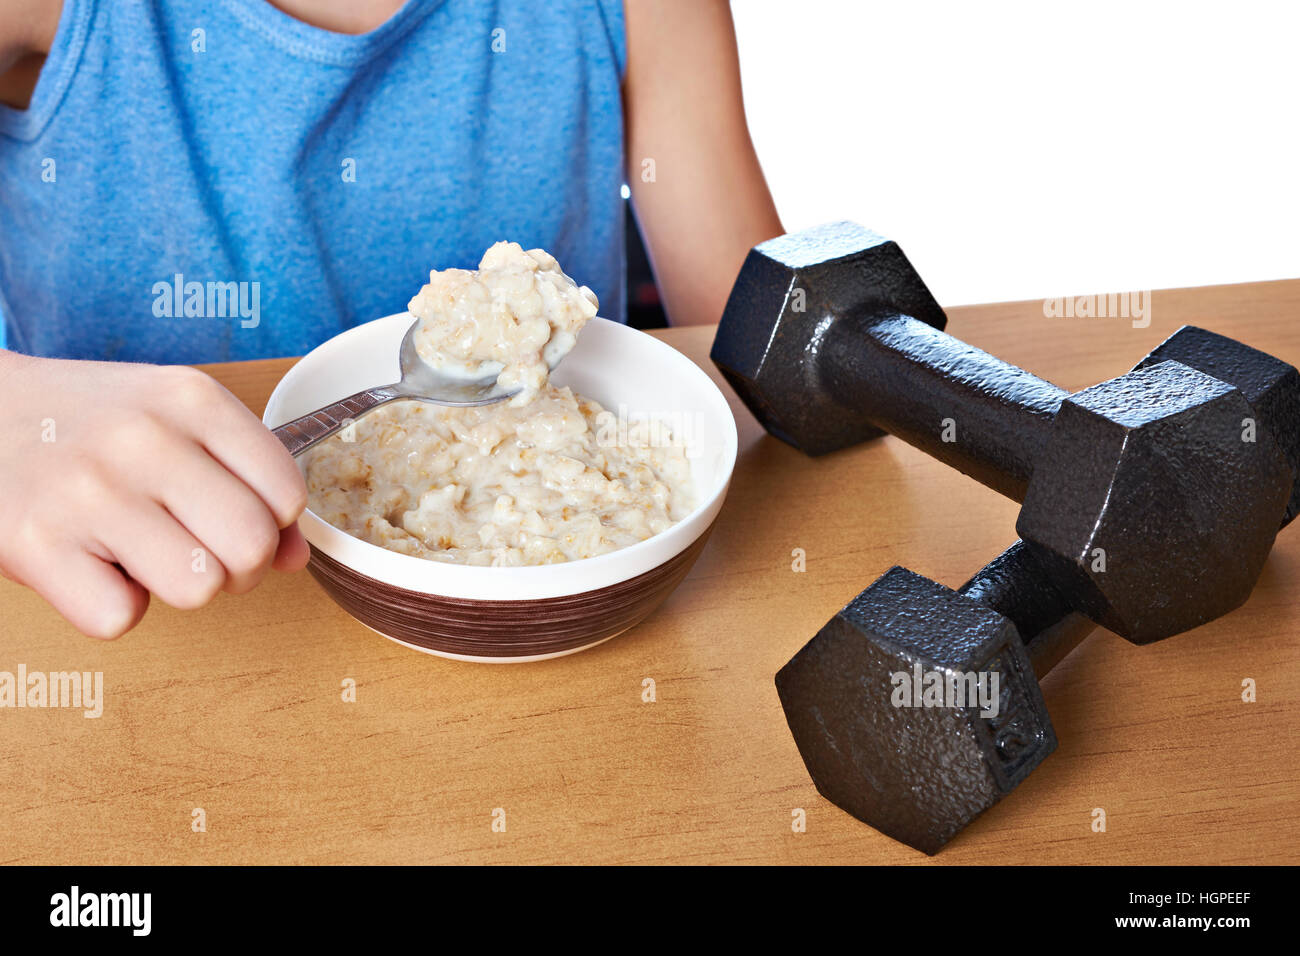 Boy eating porridge and dumbbells as symbols of sports lifestyle Stock Photo